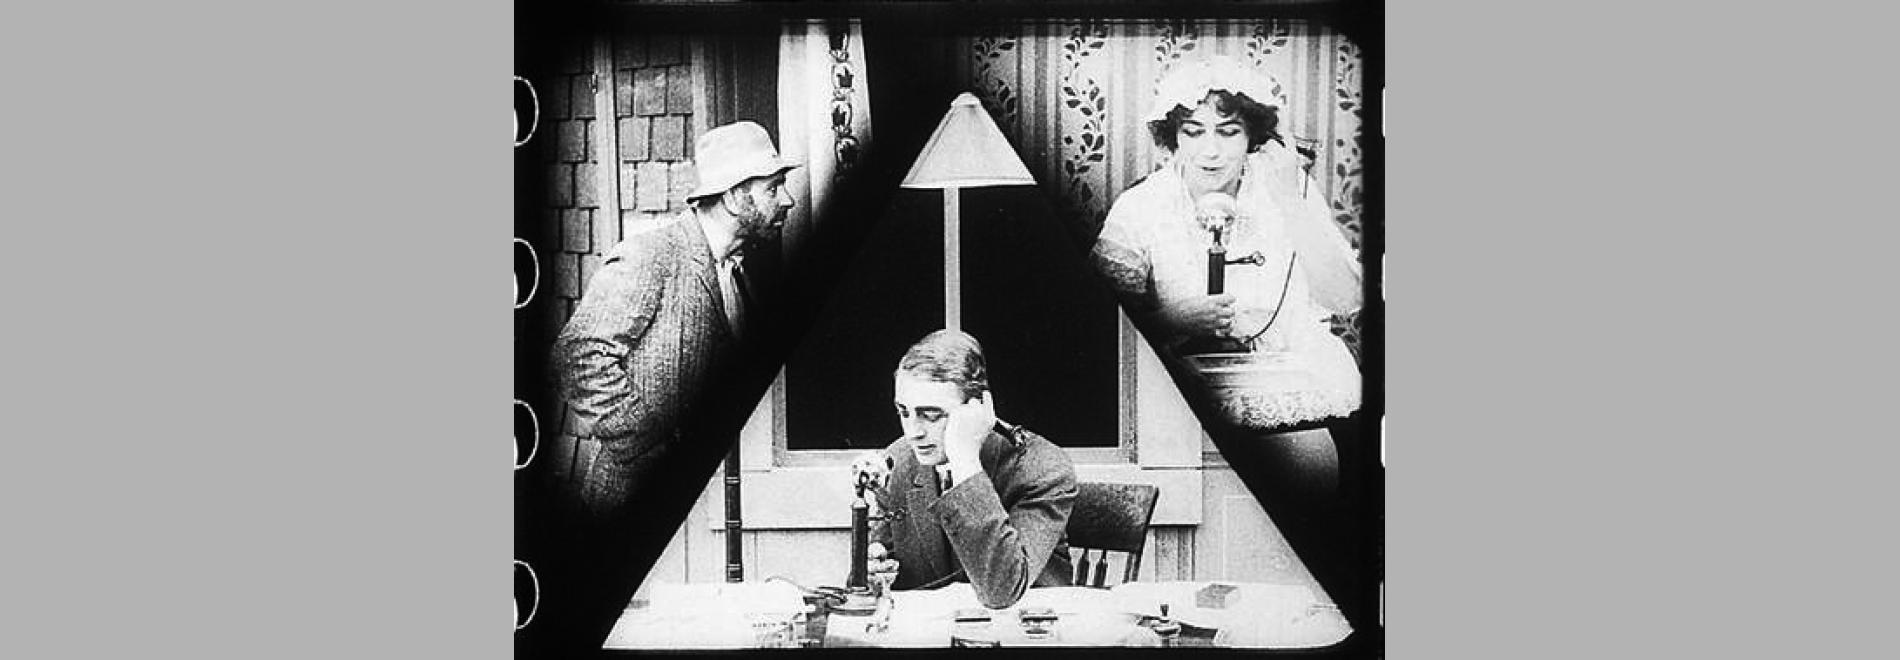 Suspense (Lois Weber, 1913)